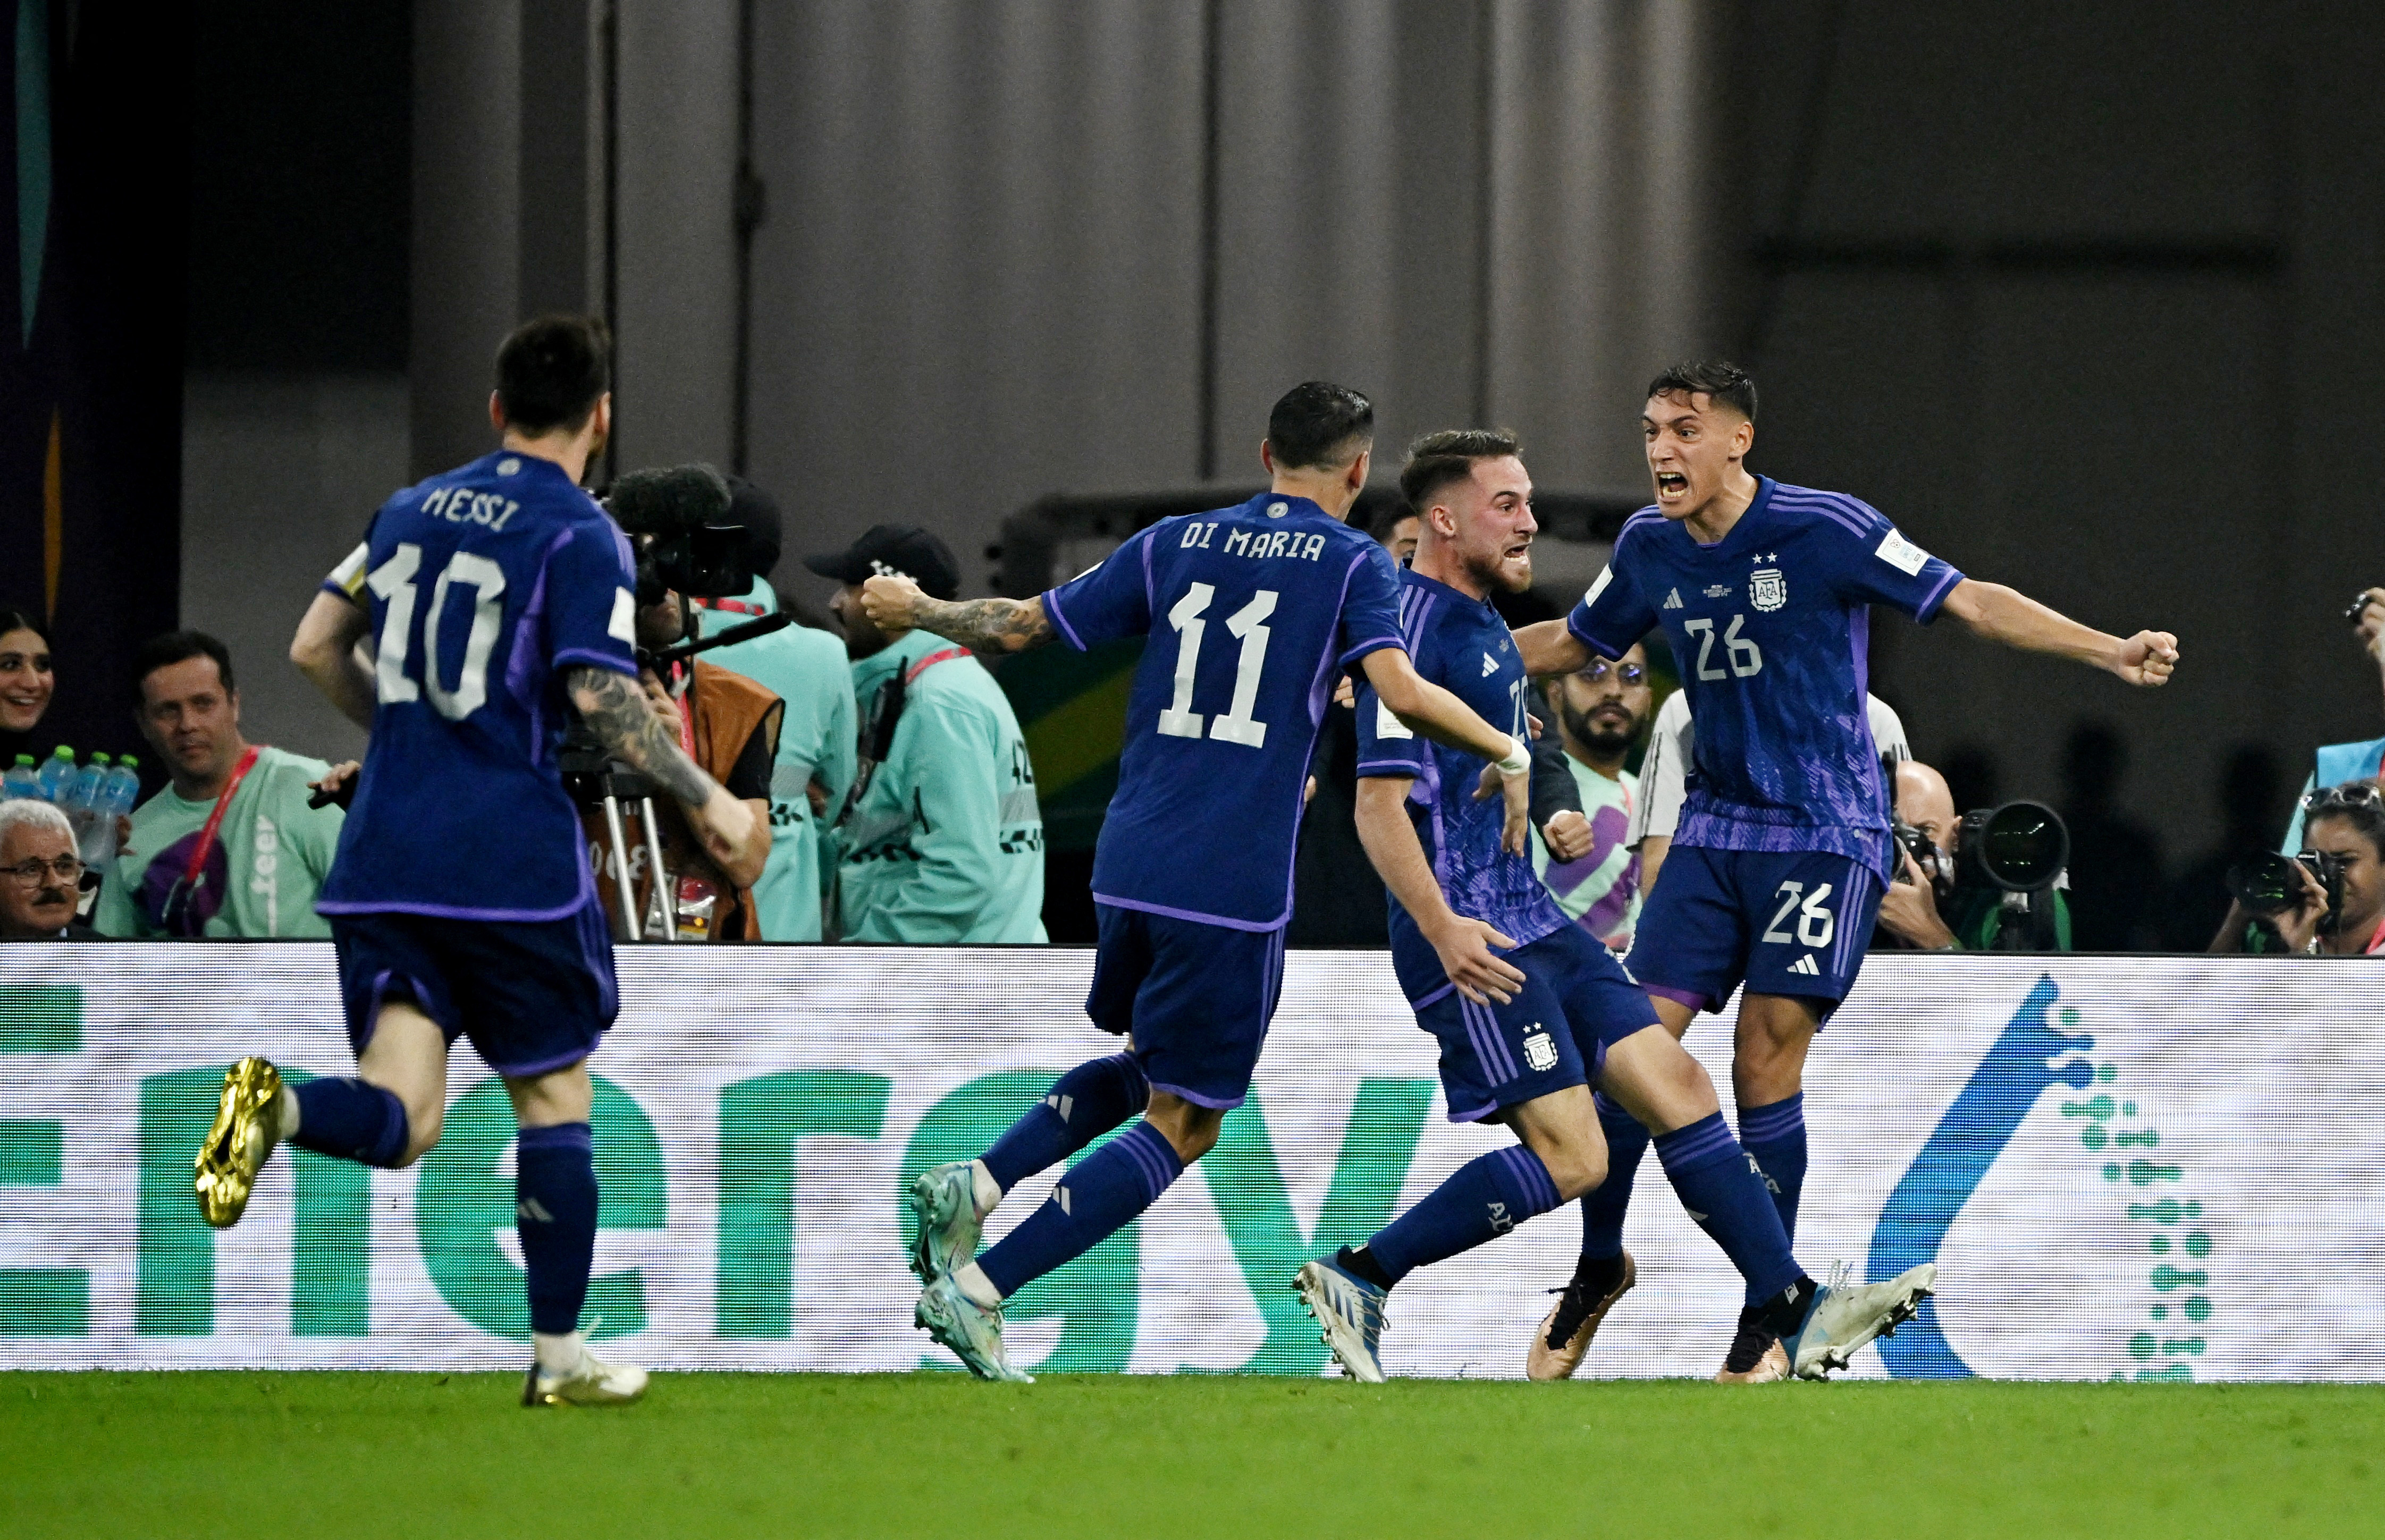 El festejo argentino luego del 1-0. Foto: REUTERS/Dylan Martinez